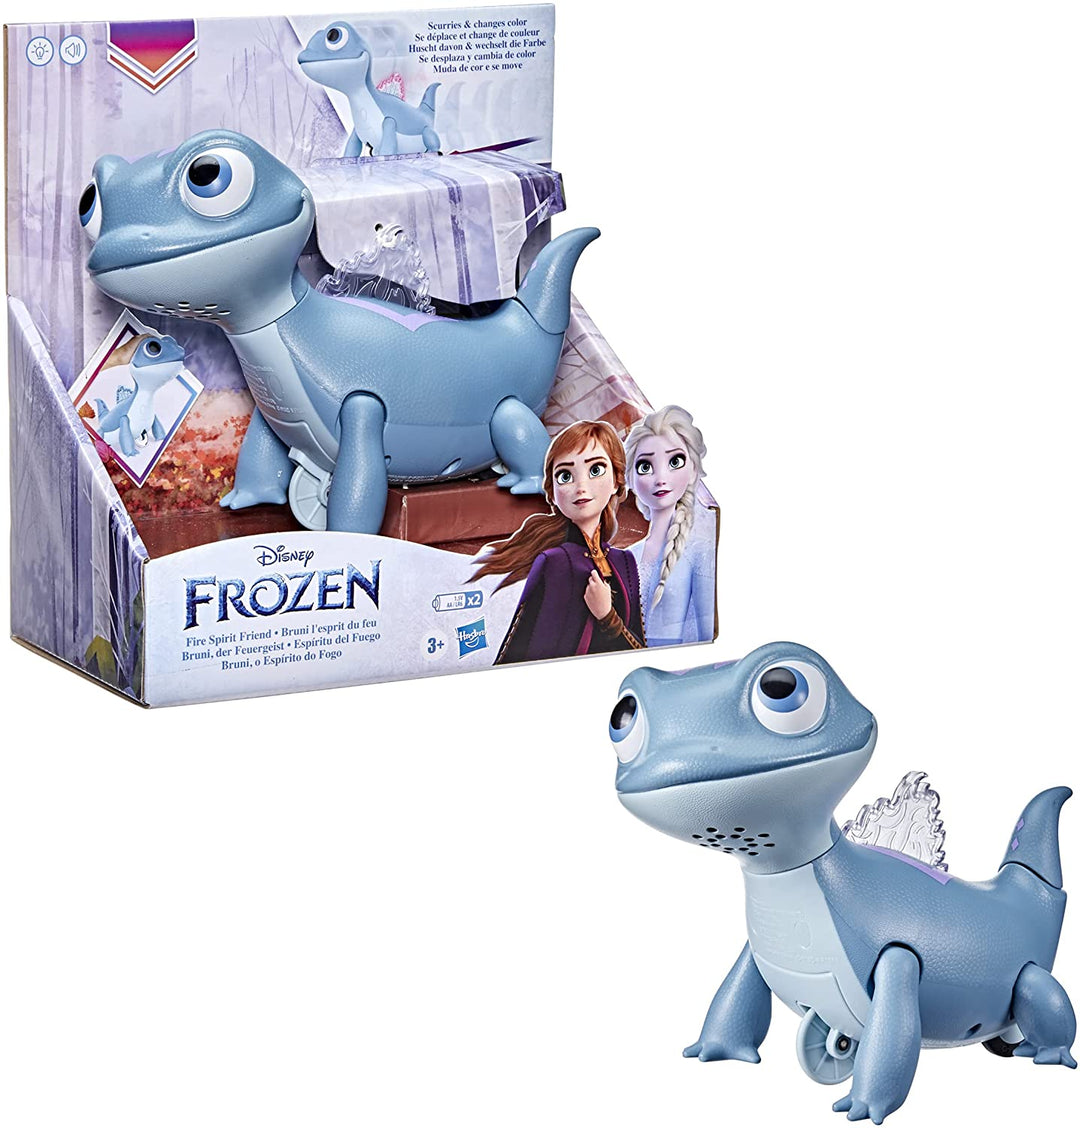 Disney Frozen 2 Fire Spirit Friend Toy, Frozen 2 Salamandre, Bruni Frozen 2 Toy, Jouets pour enfants à partir de 3 ans